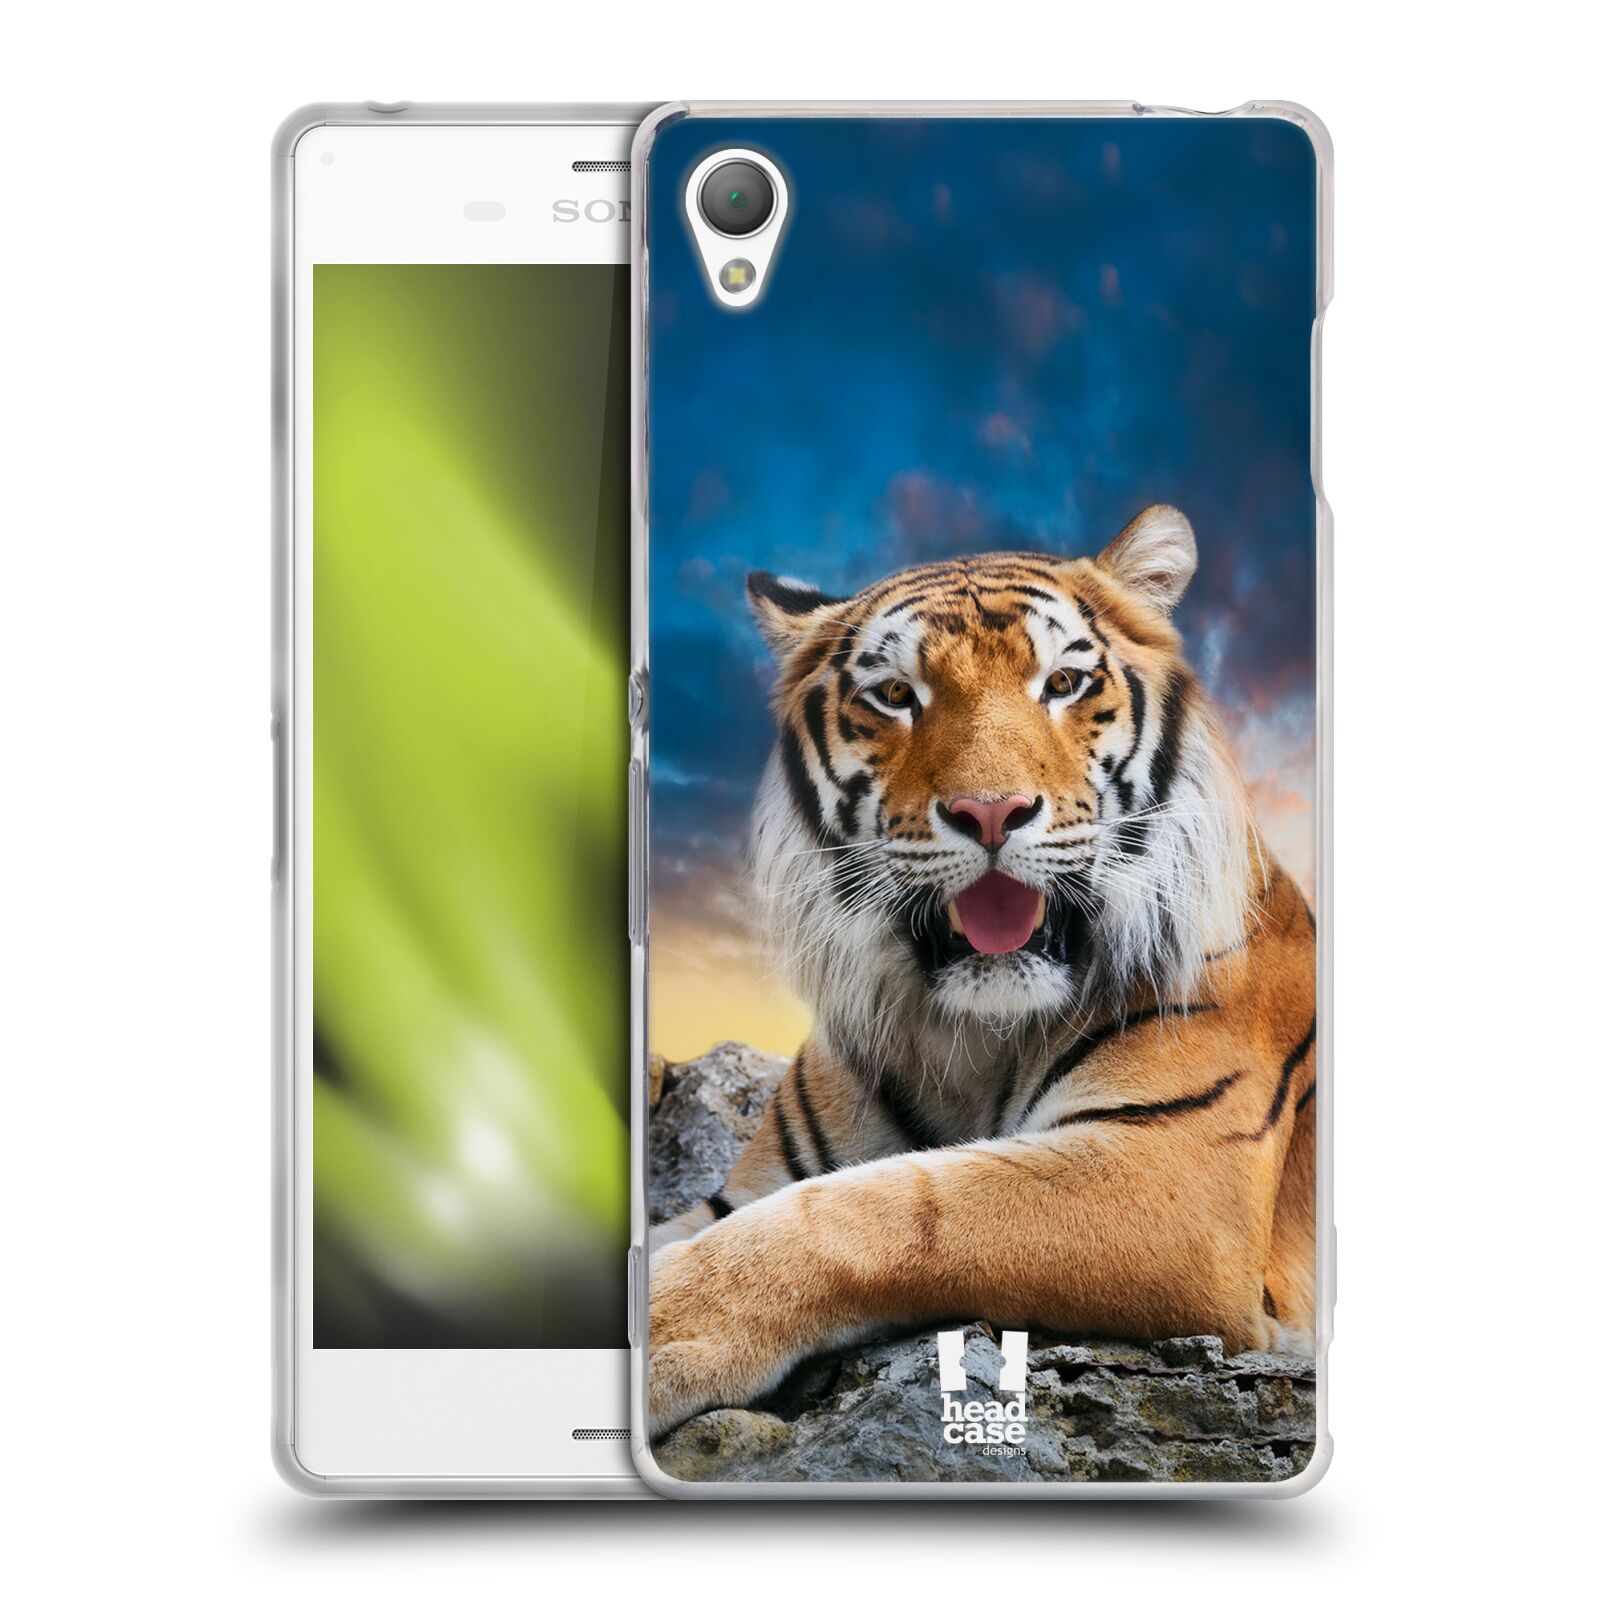  HEAD CASE silikonový obal na mobil Sony Xperia Z3 vzor Divočina, Divoký život a zvířata foto TYGR A NEBE